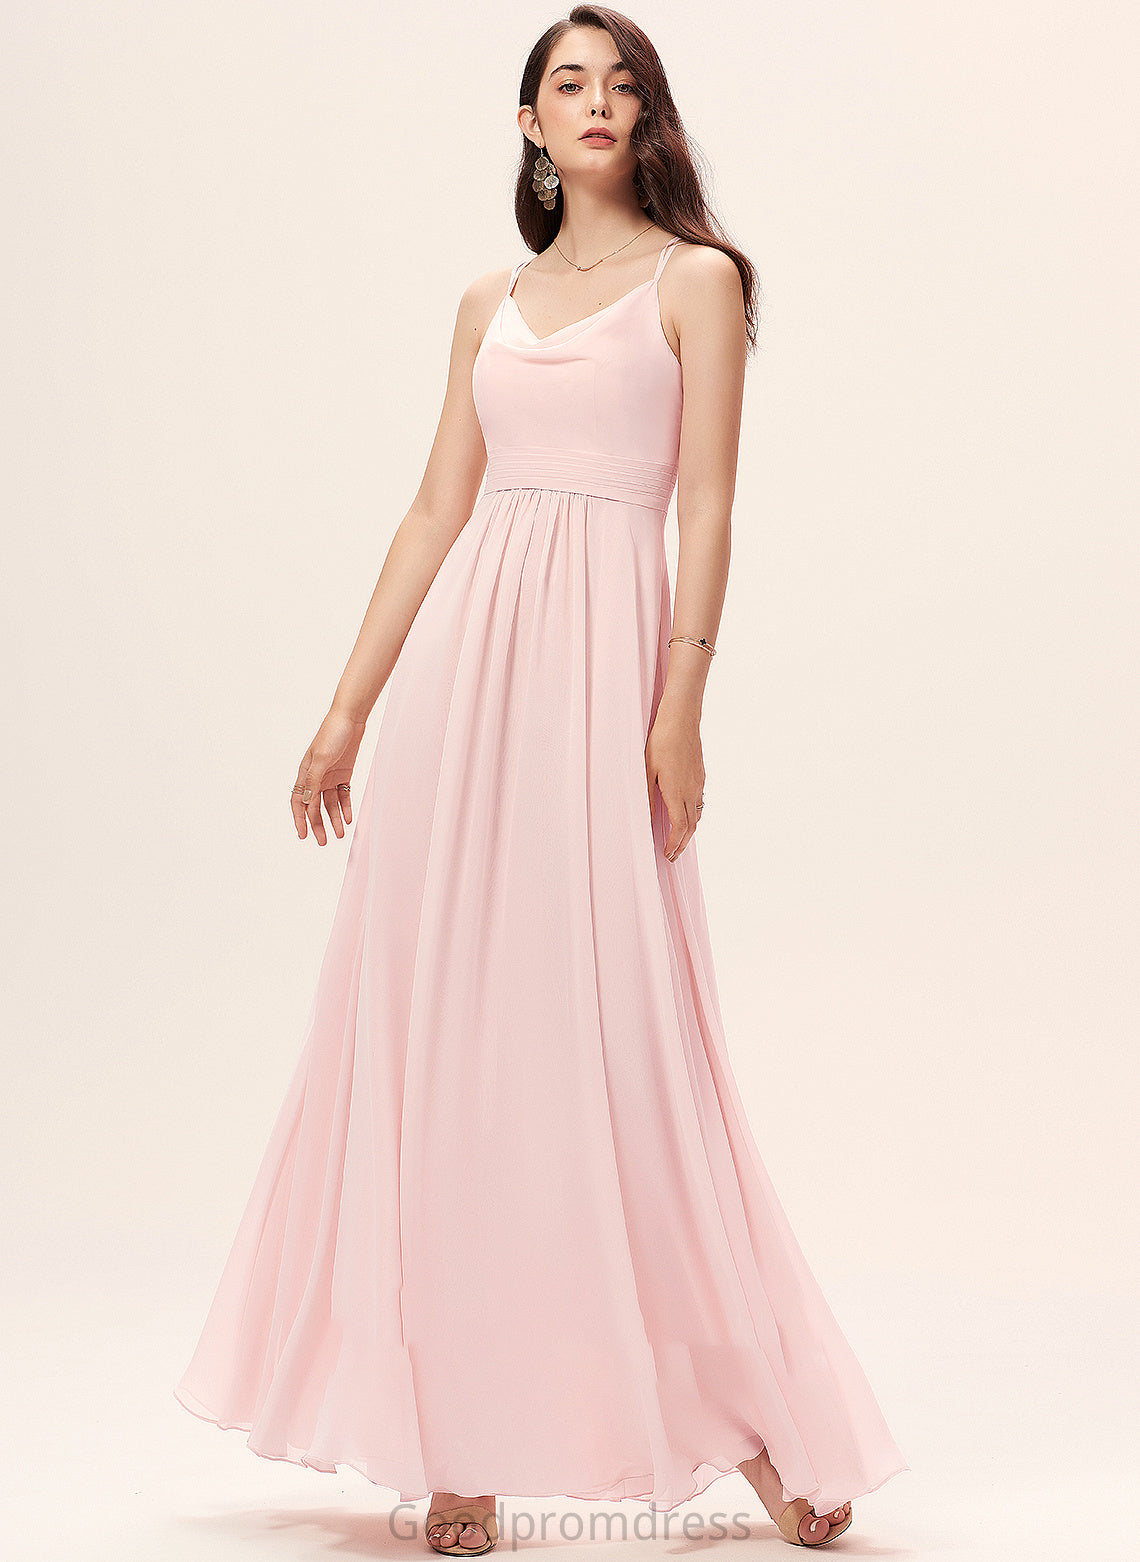 CowlNeck A-Line Floor-Length Silhouette Neckline Length Fabric Straps Lisa Natural Waist A-Line/Princess Sleeveless Bridesmaid Dresses